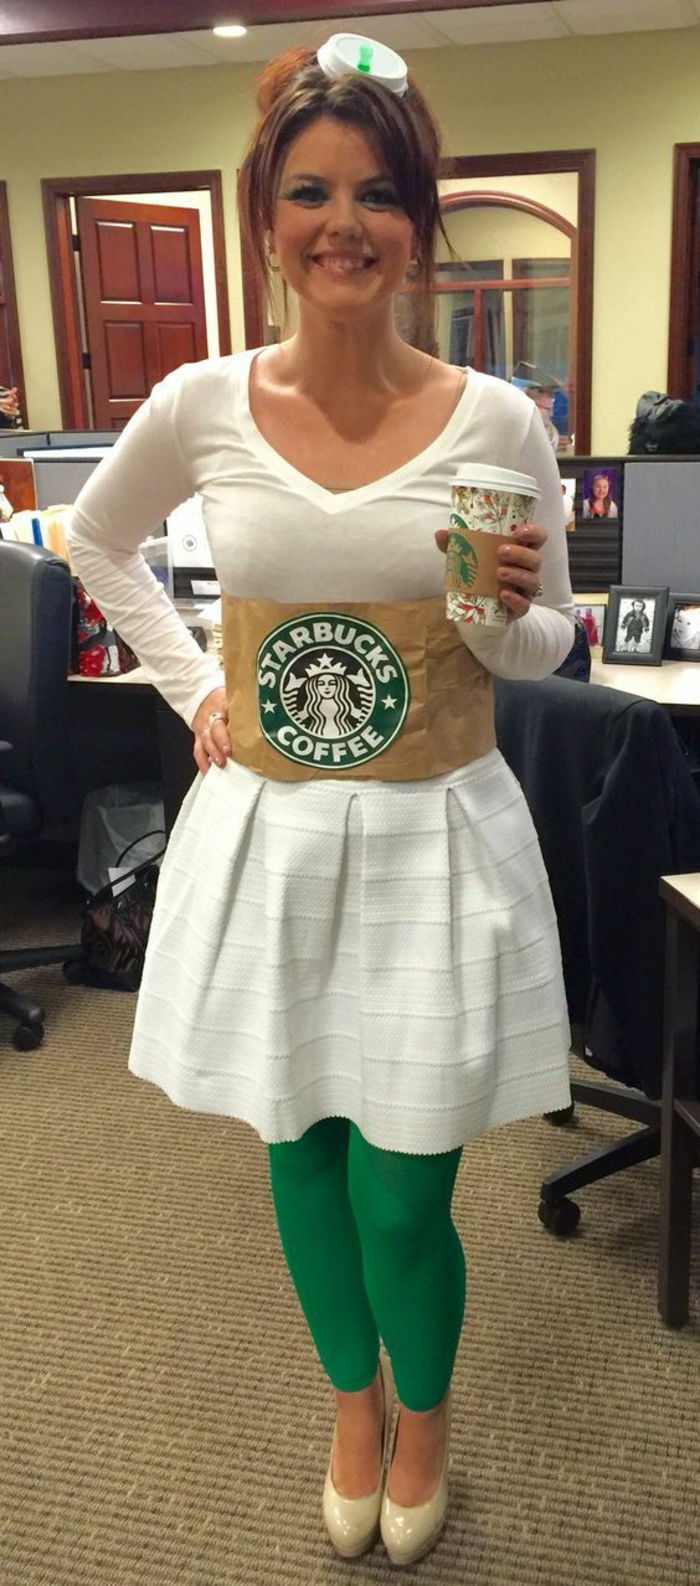 kostum Starbucks, da bi se sami - kot vrč z logotipom